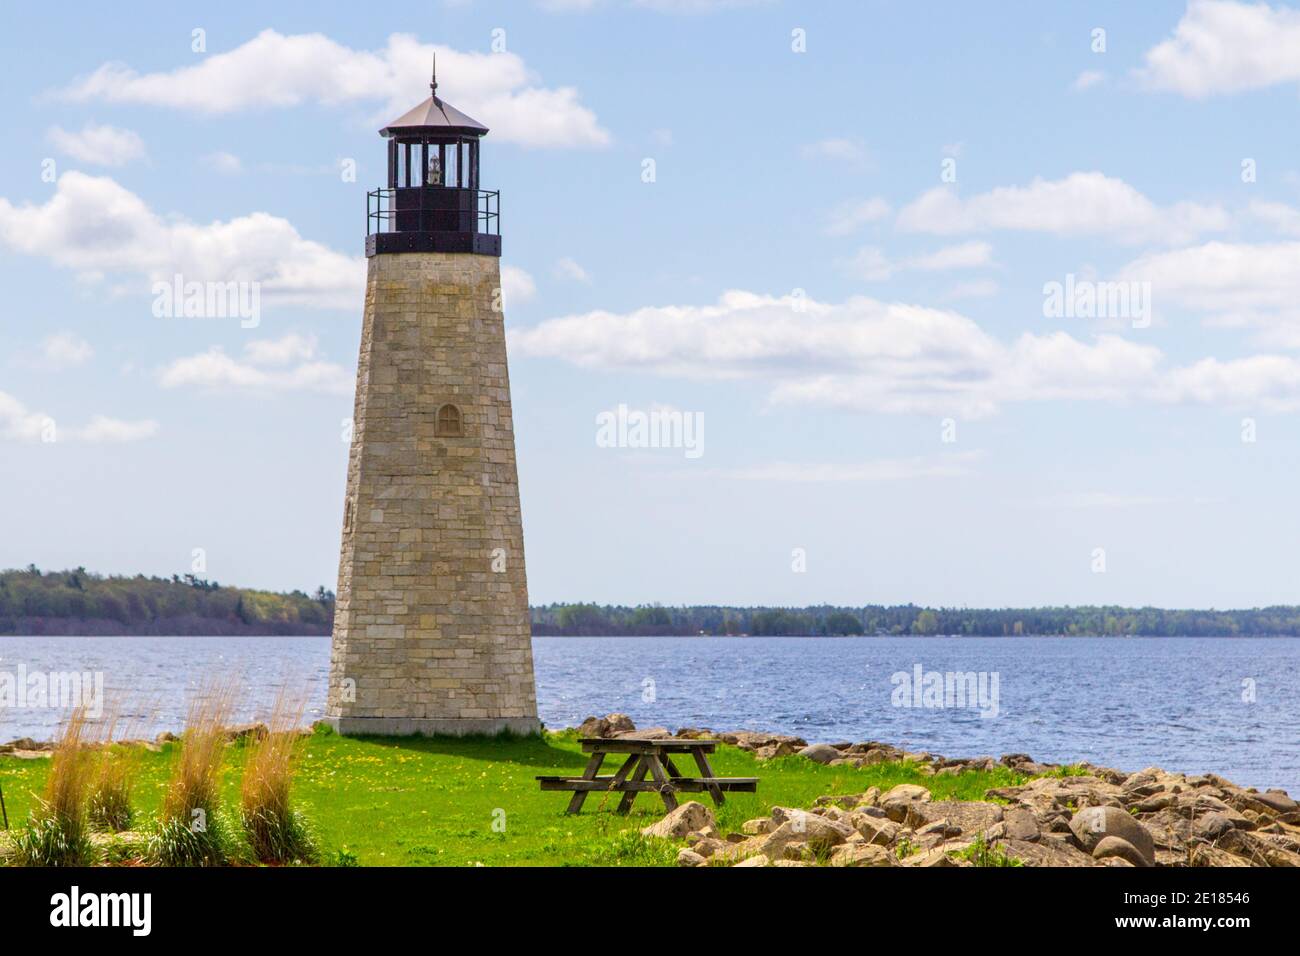 Lake Michigan Lighthouse. Leuchtturm an der Küste des Lake Michigan in Gladstone, Michigan. Gladstone ist eine kleine Stadt auf der Upper Peninsula. Stockfoto